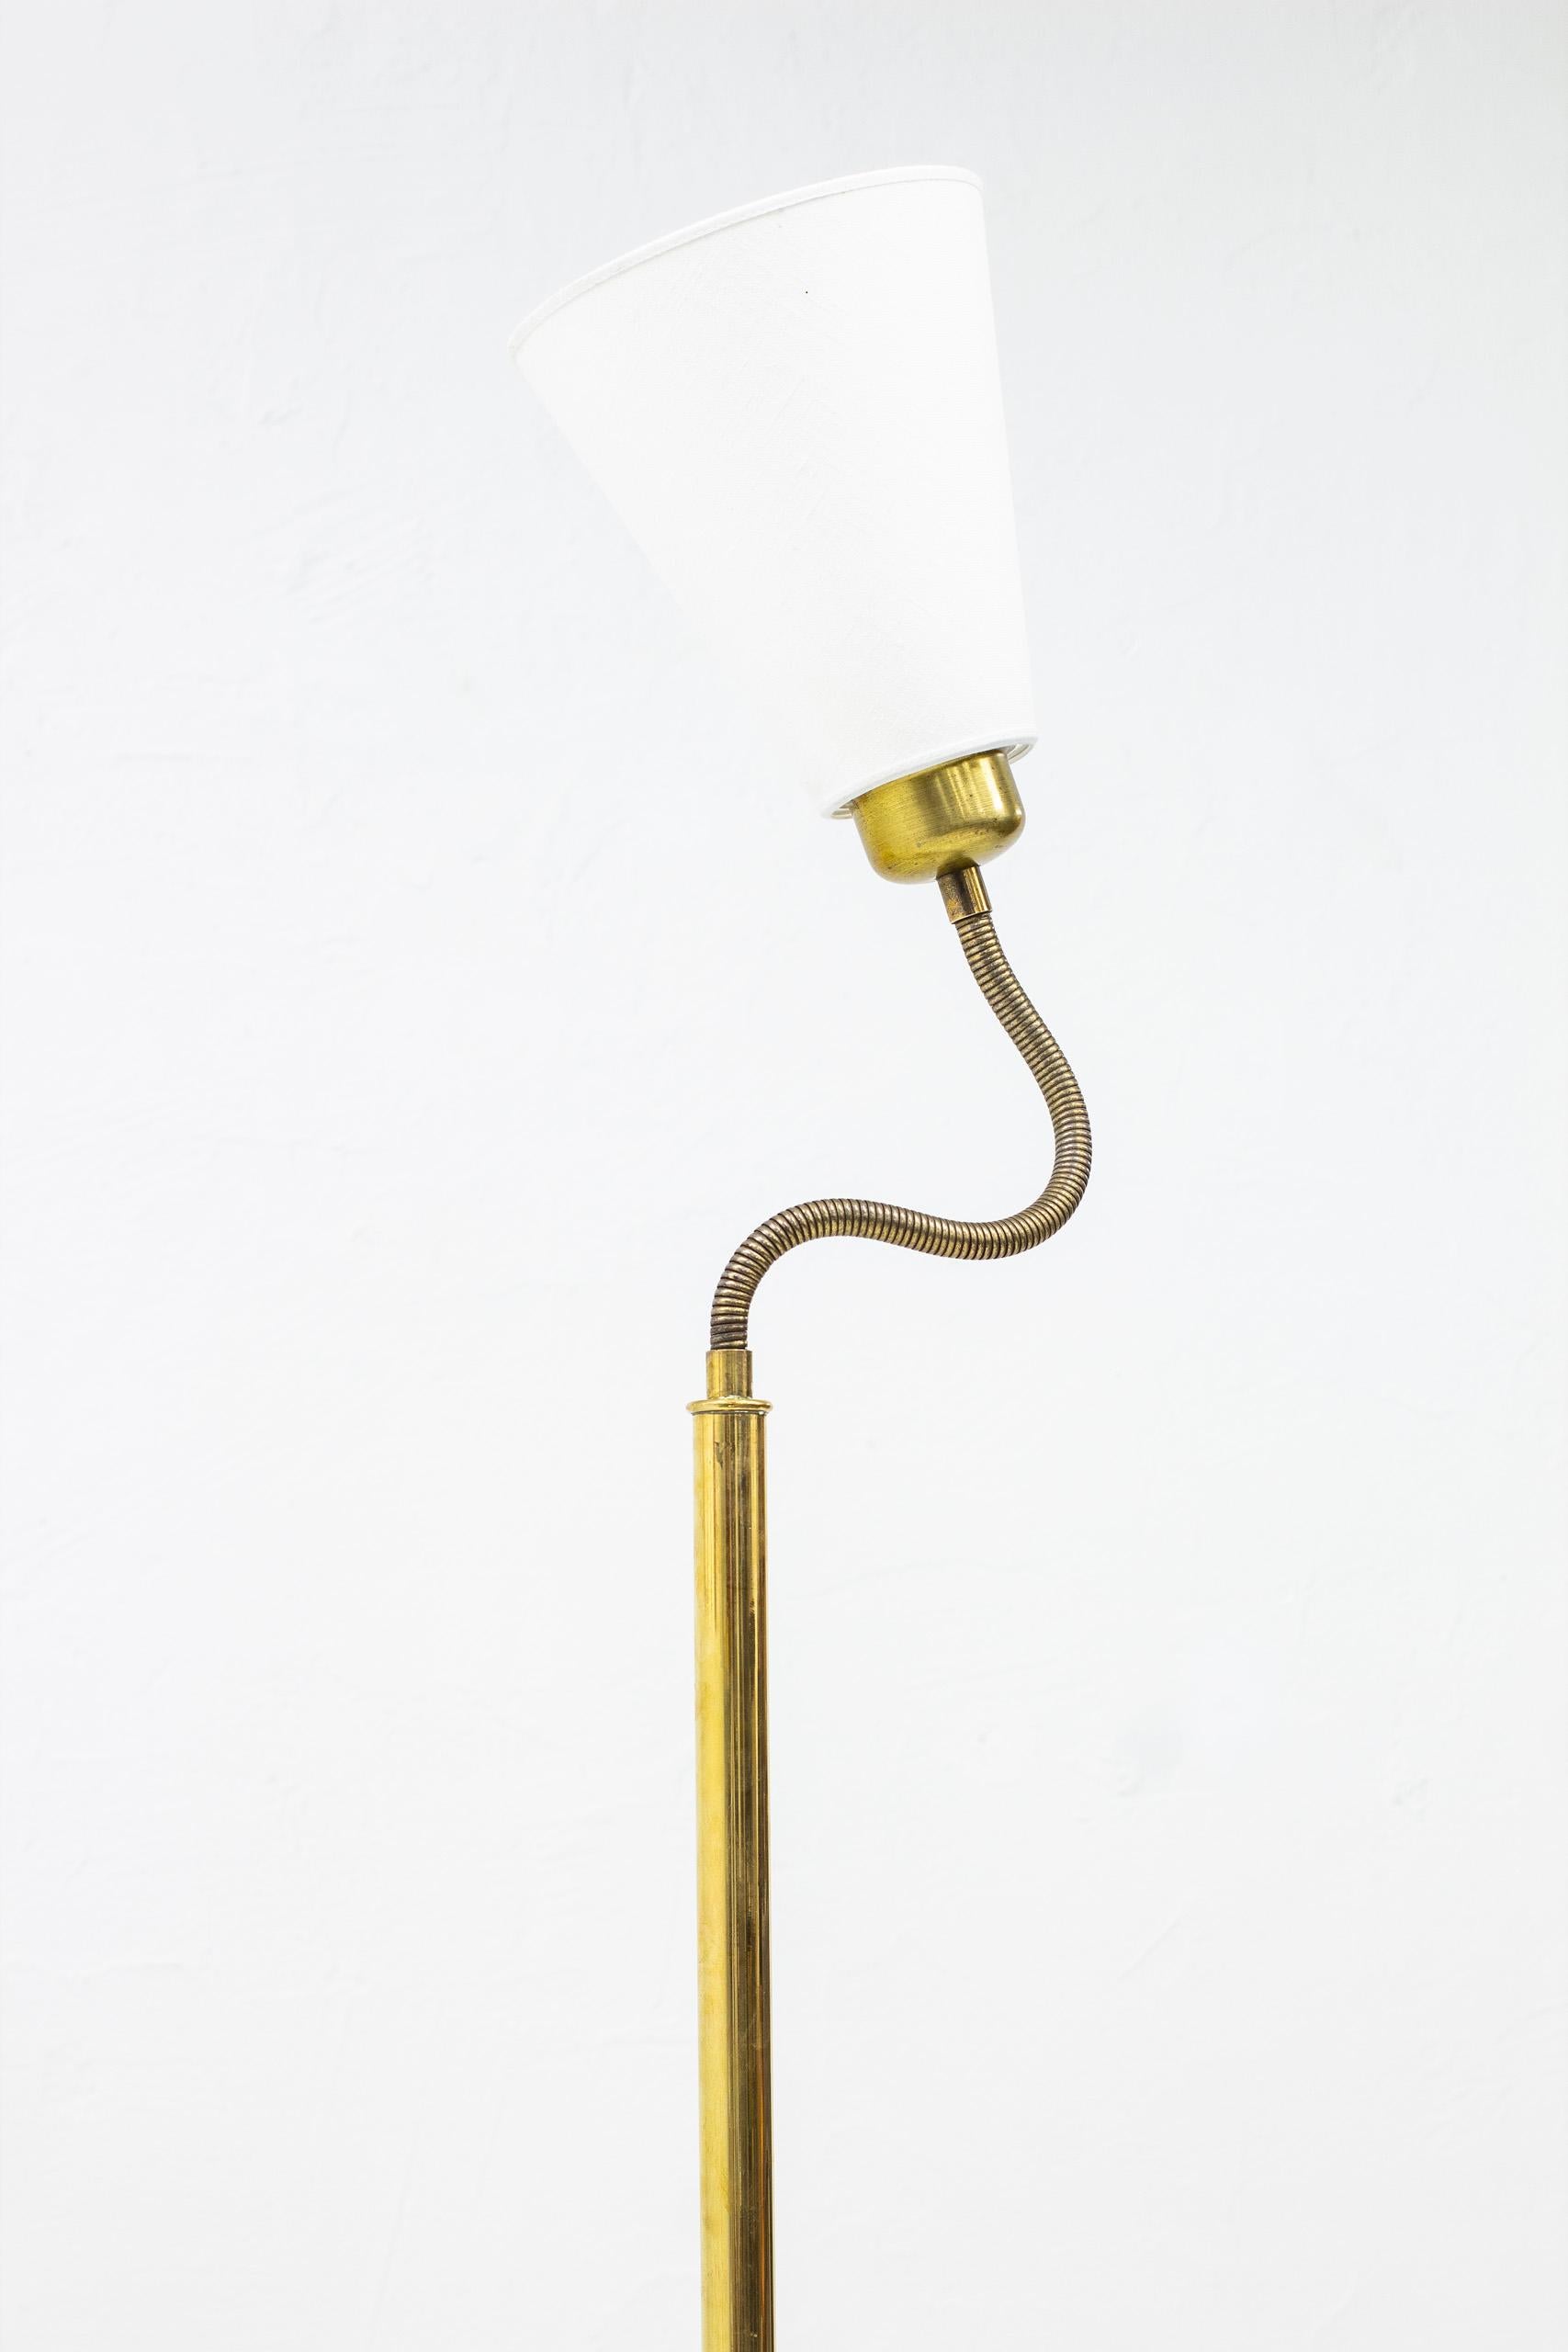 Scandinavian Modern Floor Lamp by Josef Frank for Svenskt Tenn, Sweden, 1940s